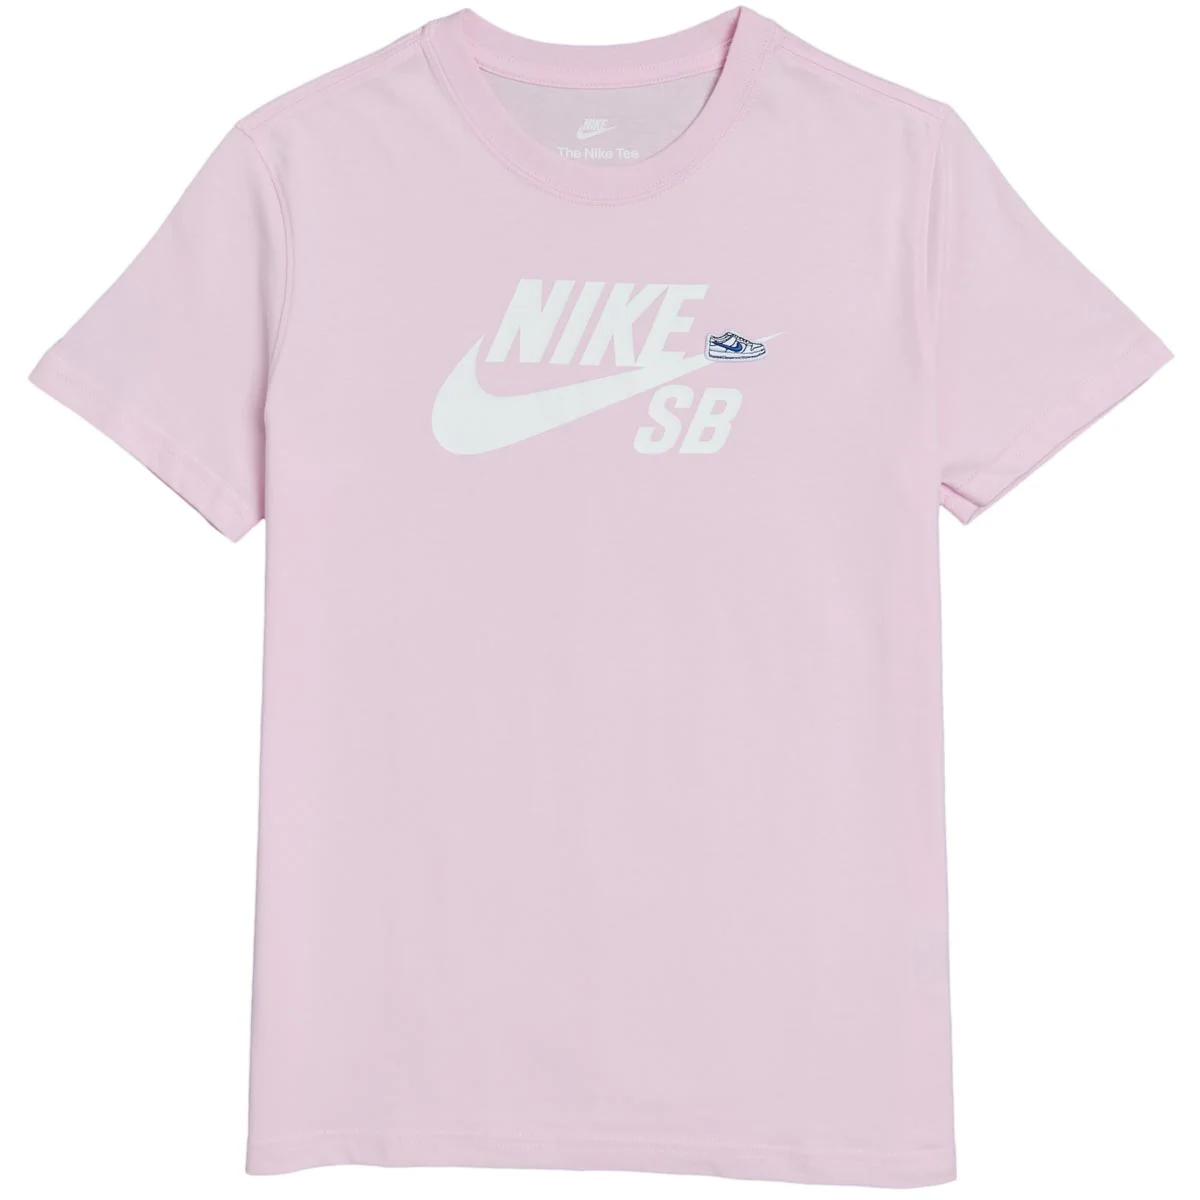 Nike SB - Big Kids' SB Logo Tee - FN9673-663 Light Pink Youth Sizes